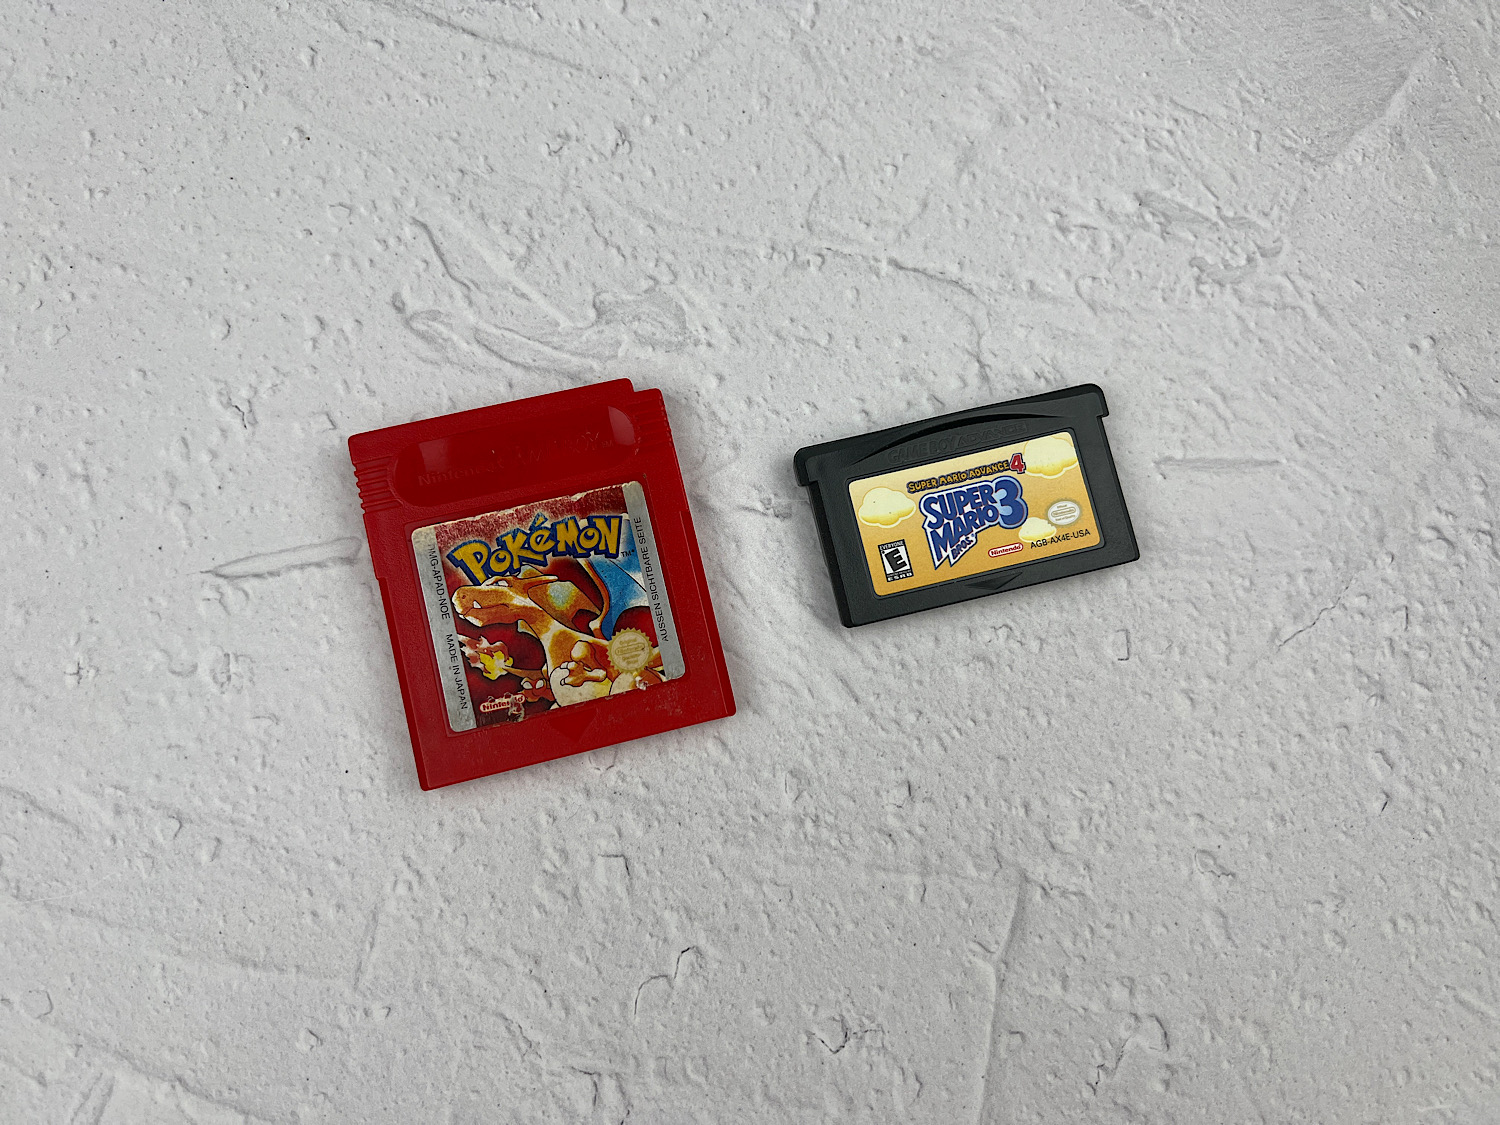 Game Boy / Game Boy Advance картриджи